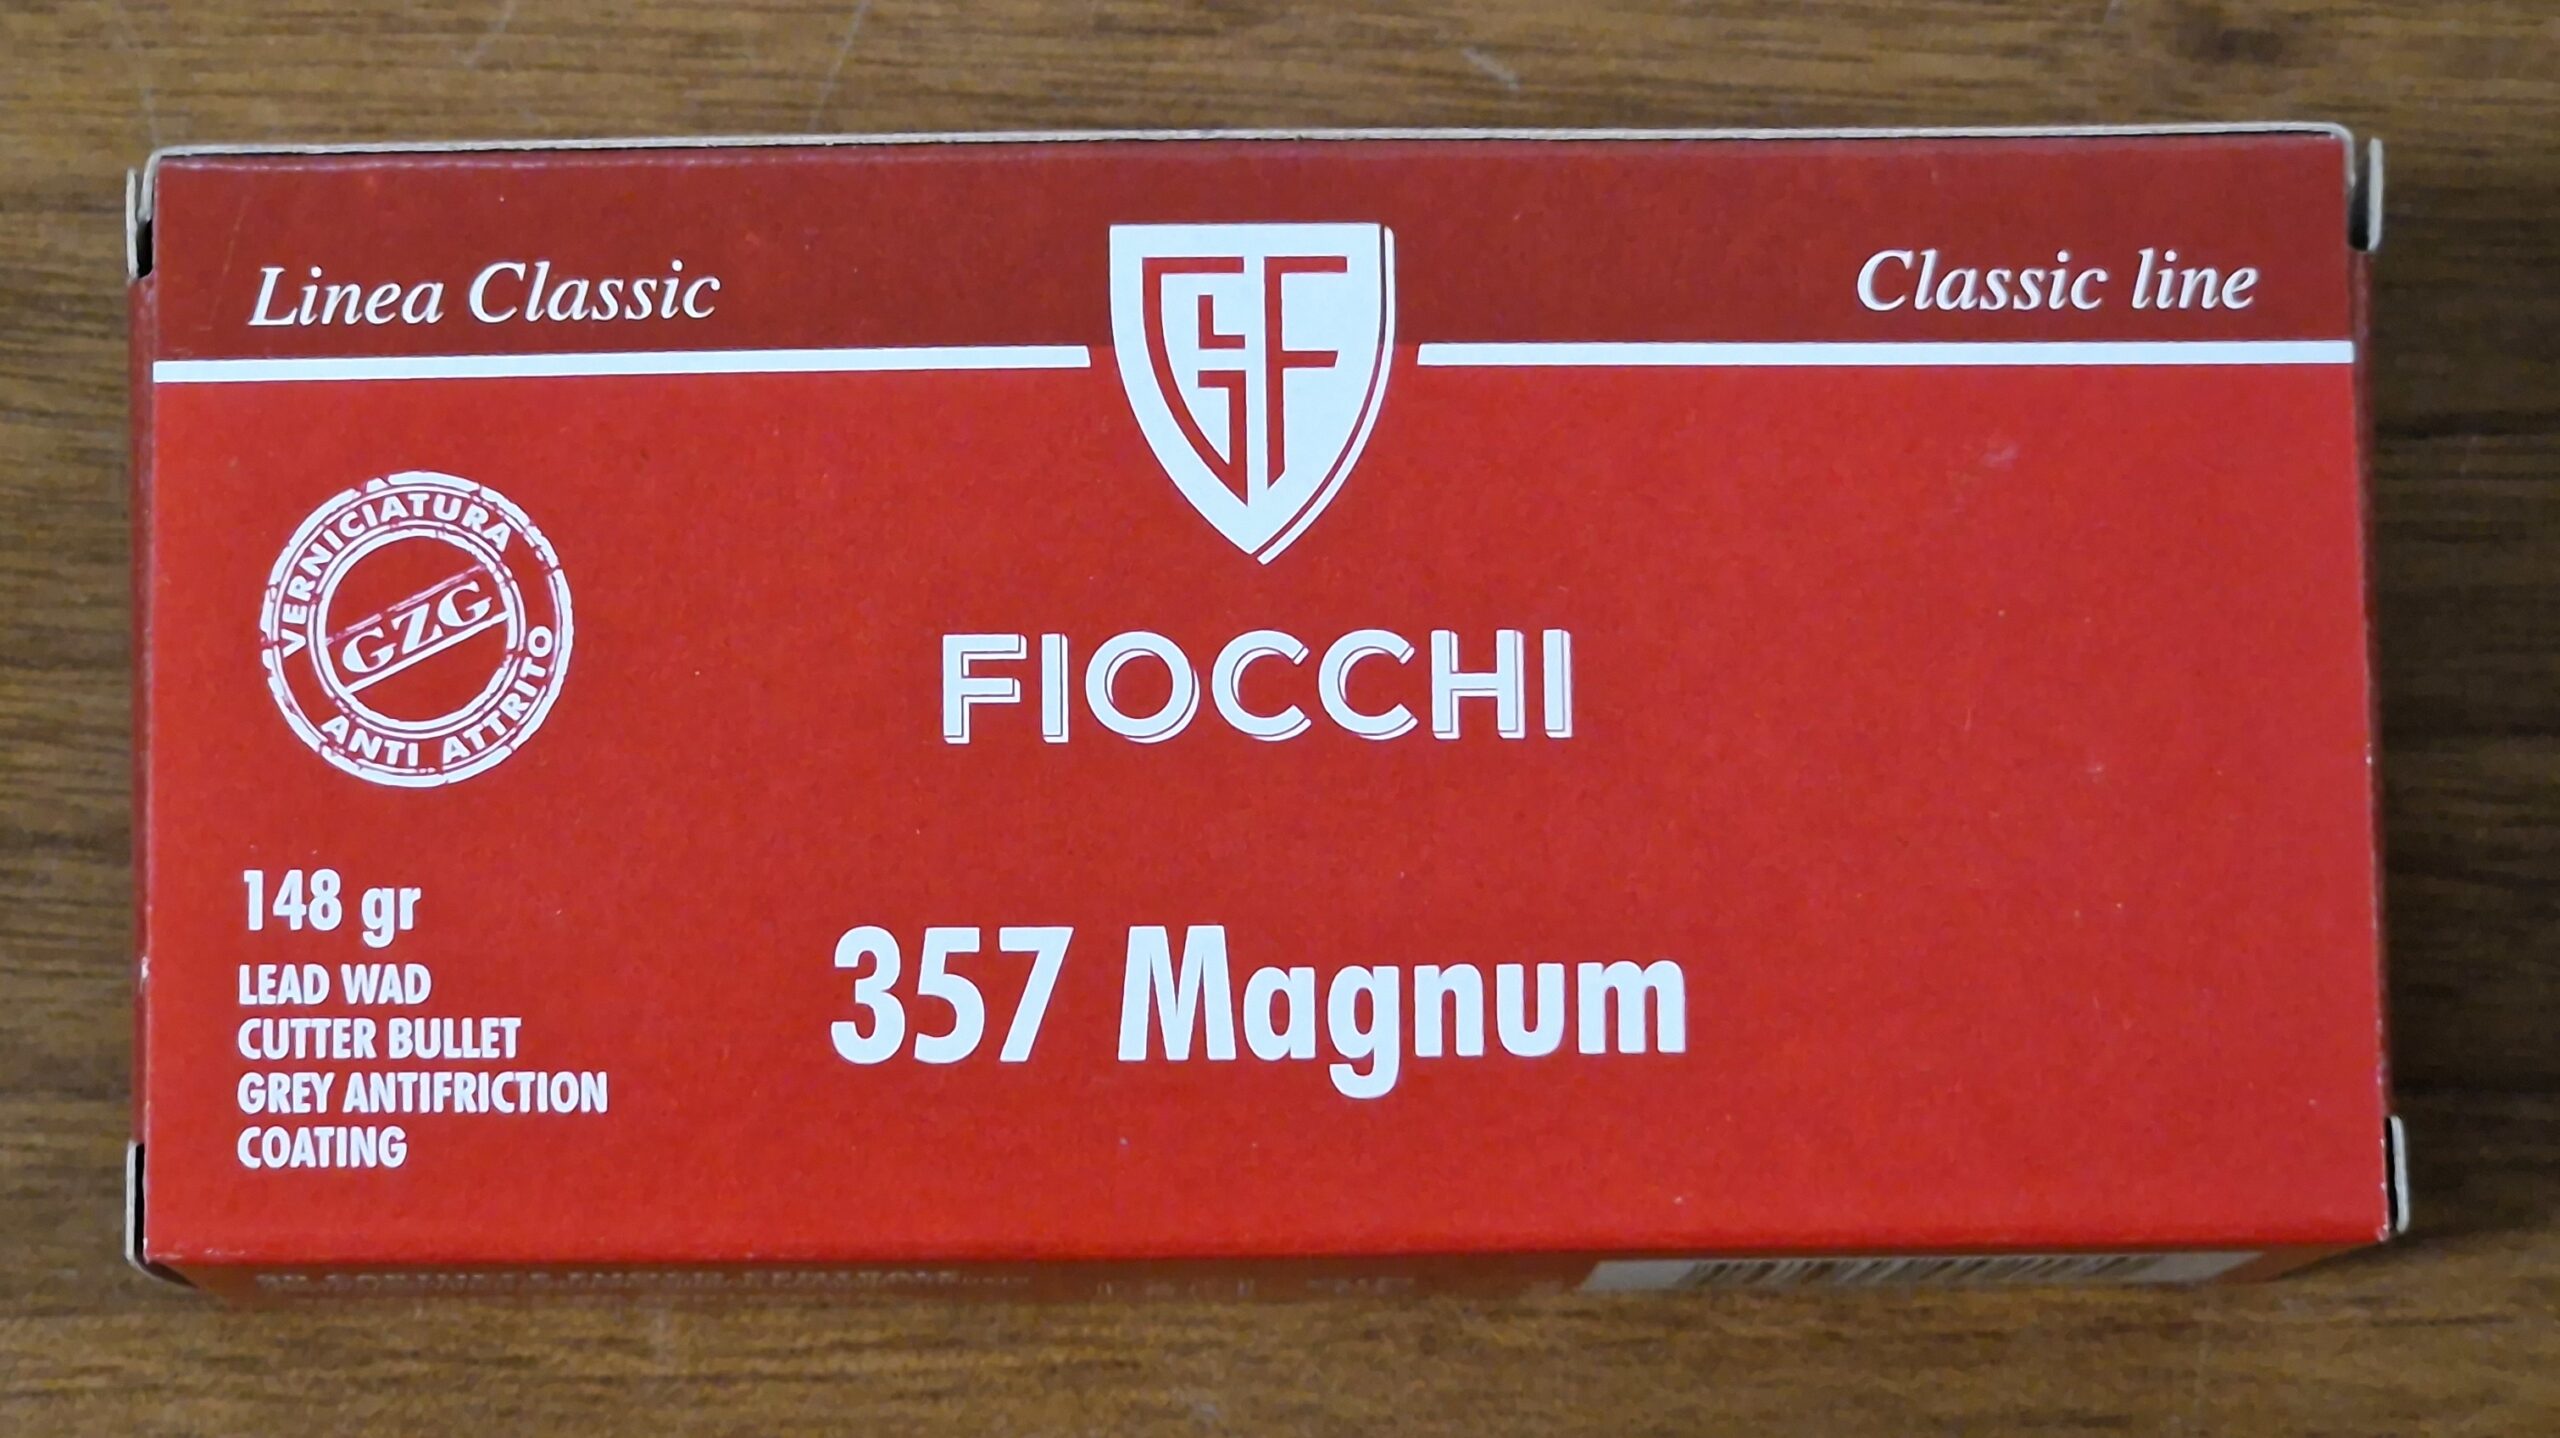 Fiocchi 357 magnum classic line-image